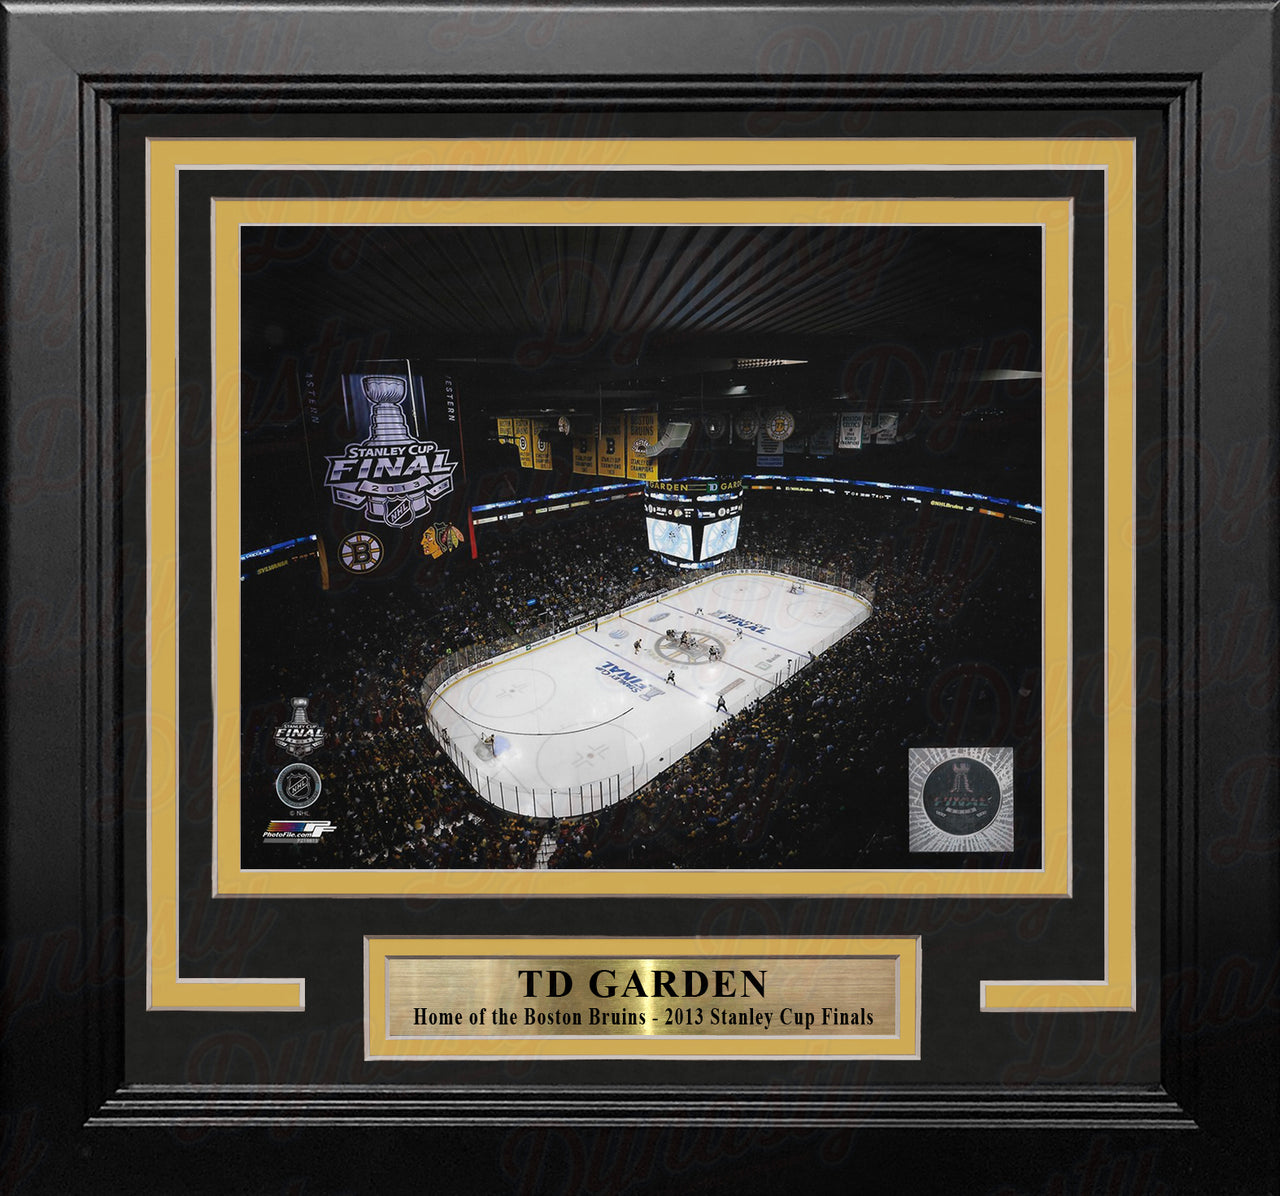 Boston Bruins TD Garden 2013 Stanley Cup Finals 8" x 10" Framed Hockey Stadium Photo